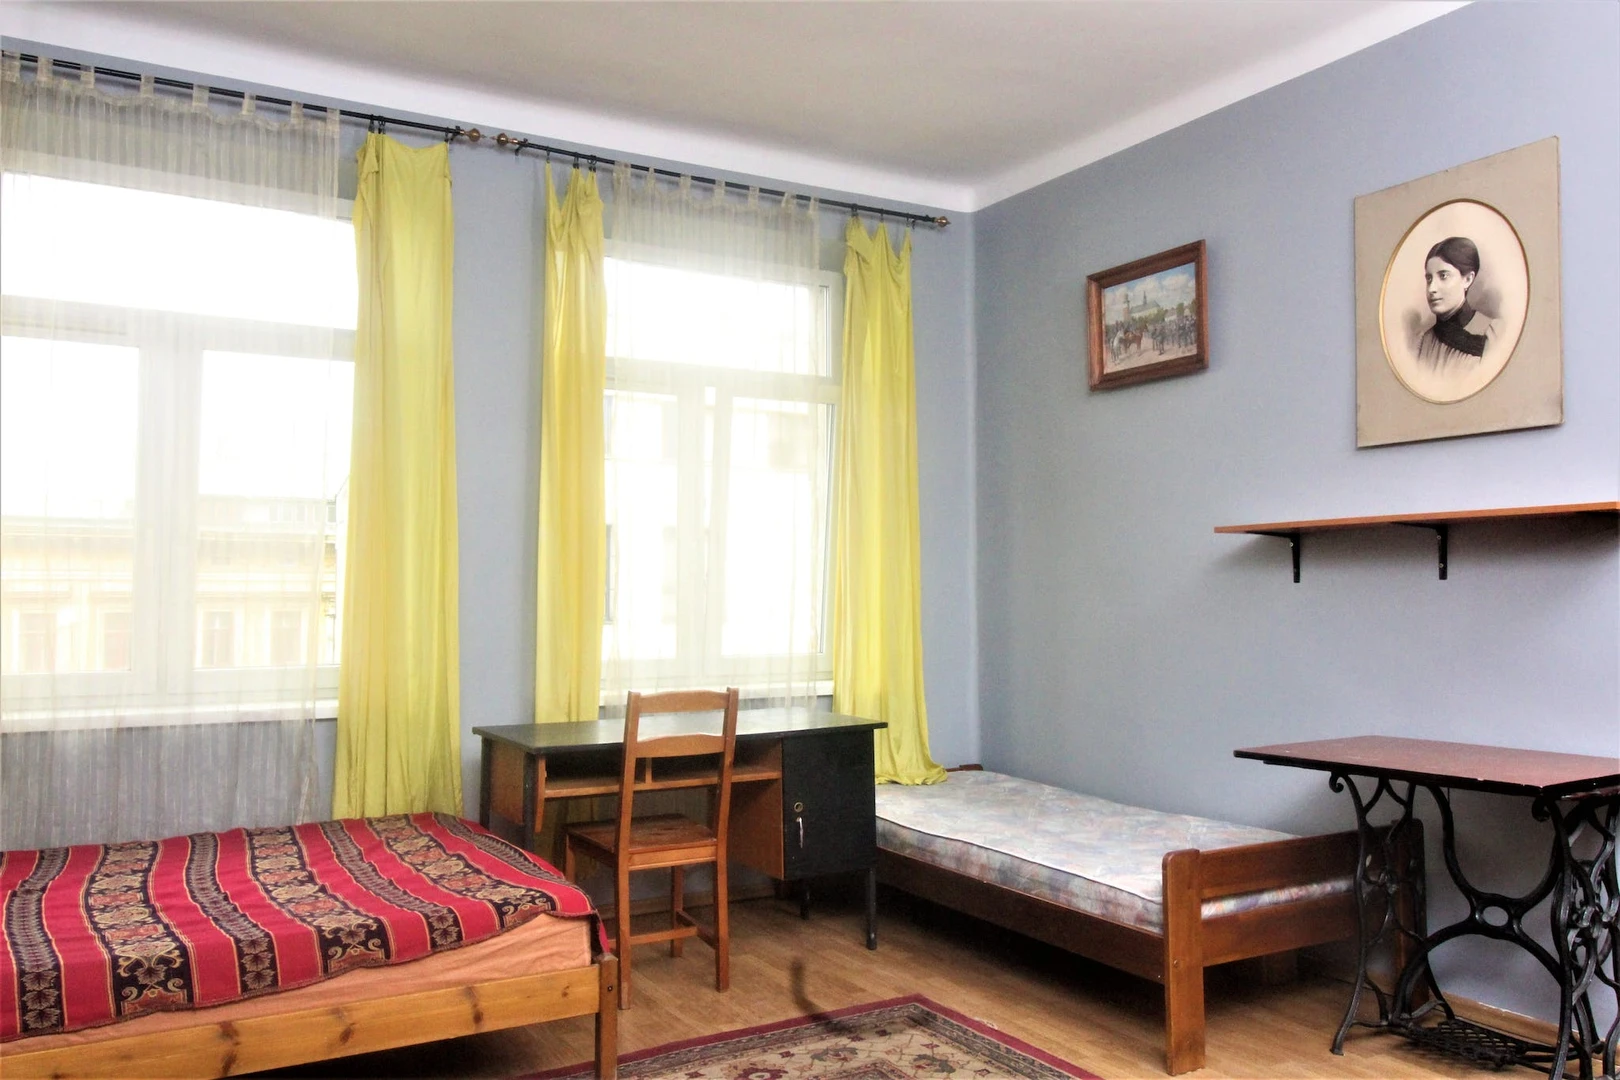 Monatliche Vermietung von Zimmern in Krakau